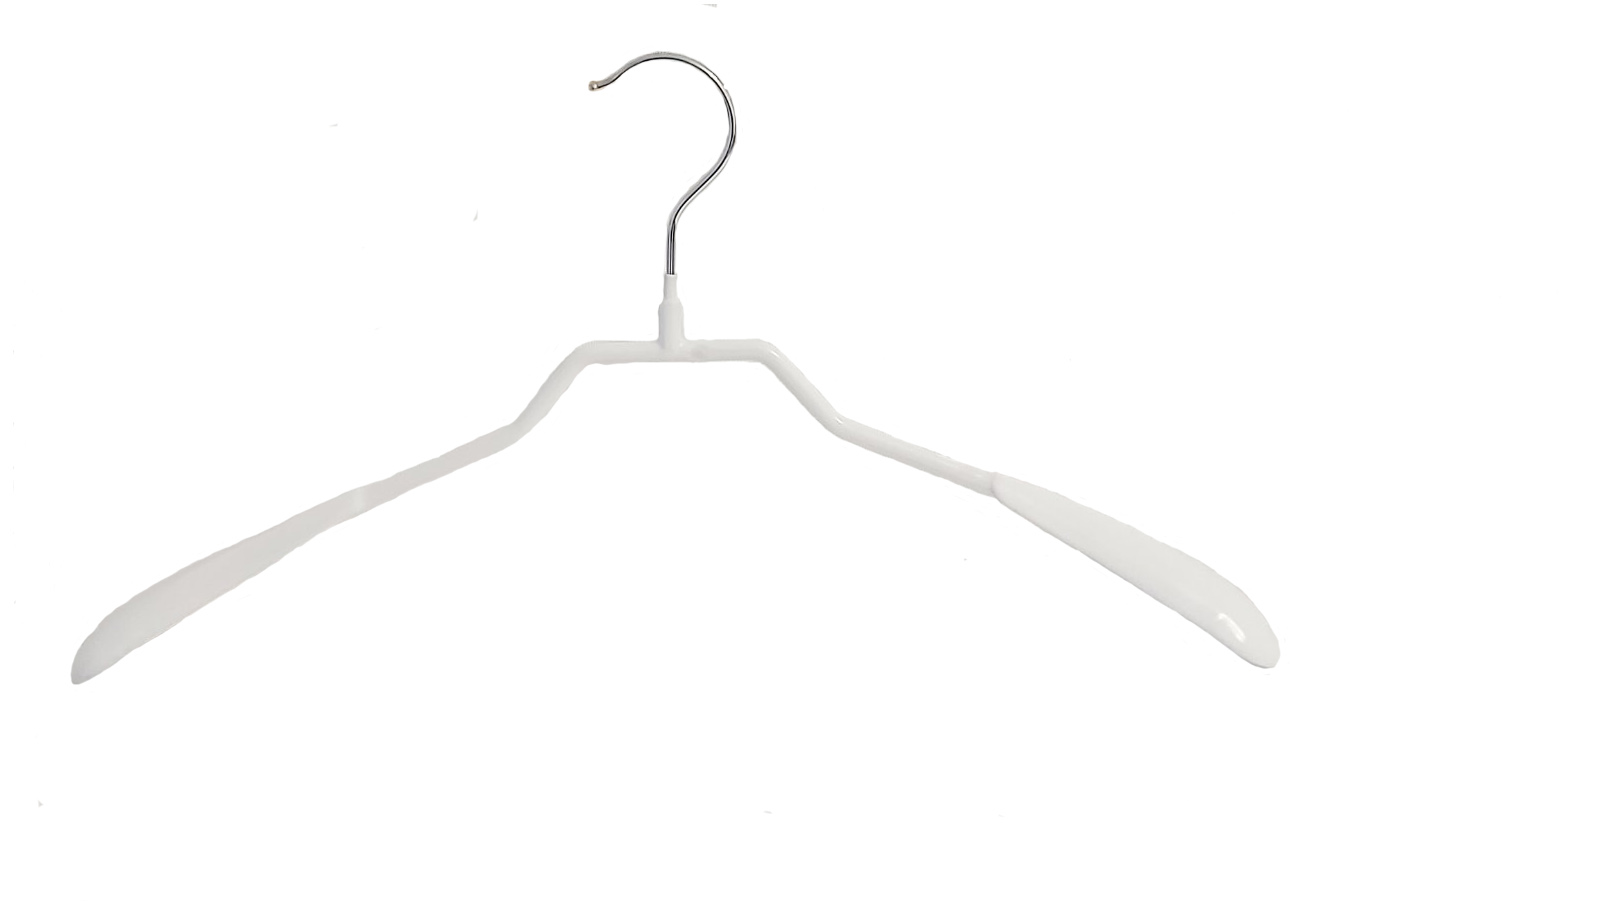 Вешалка для одежды Арт. JMW 087-A цвет - белый